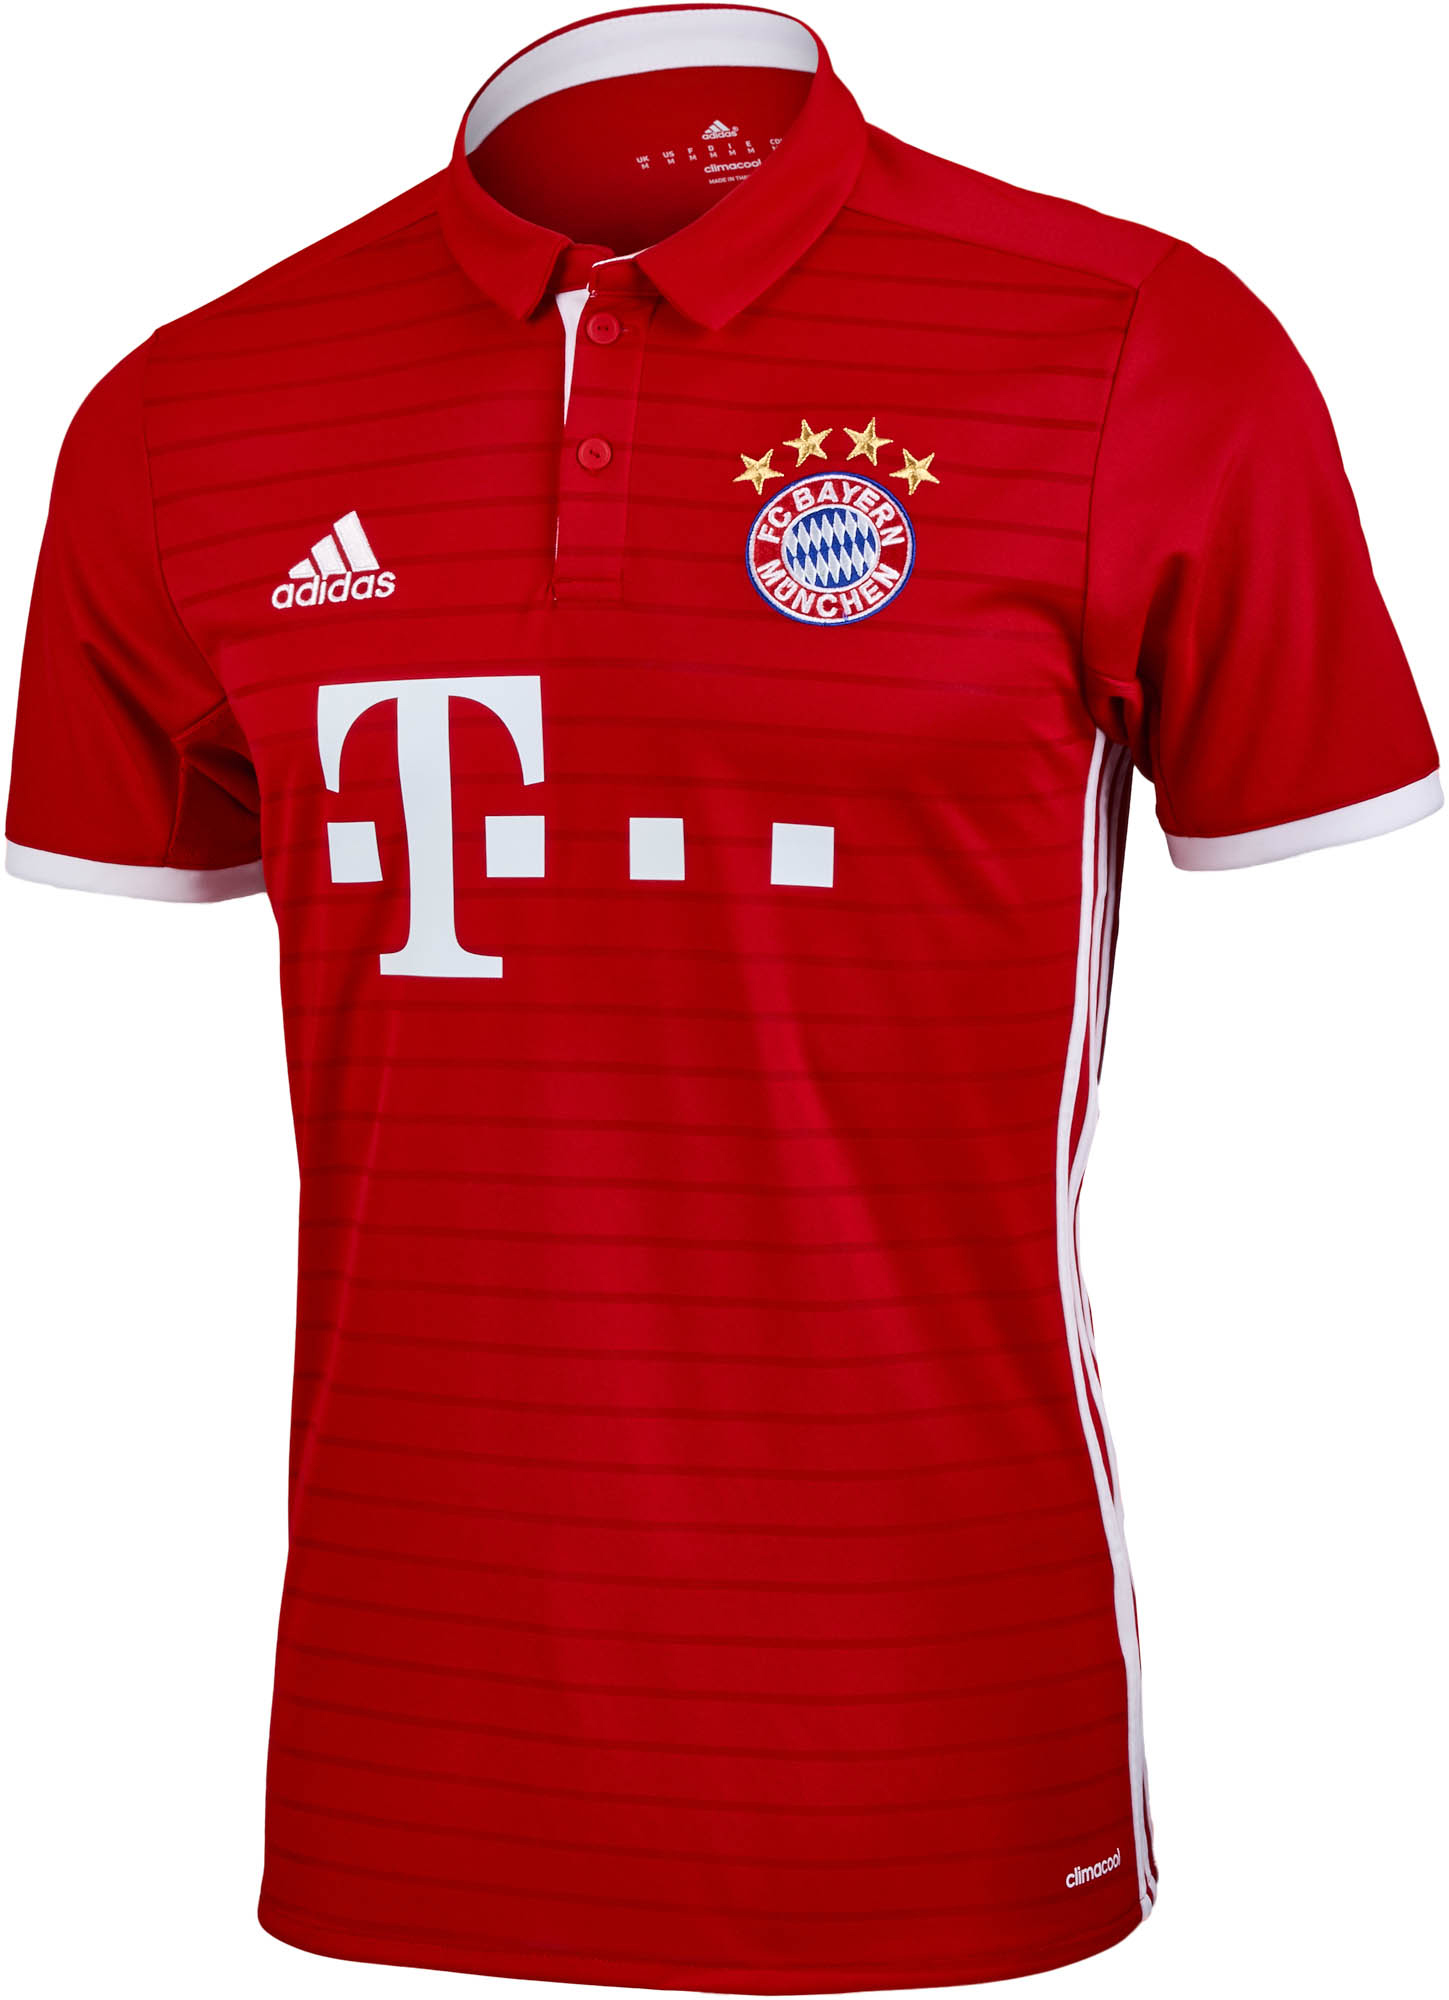 adidas Bayern Munich Home Jersey - 2016 